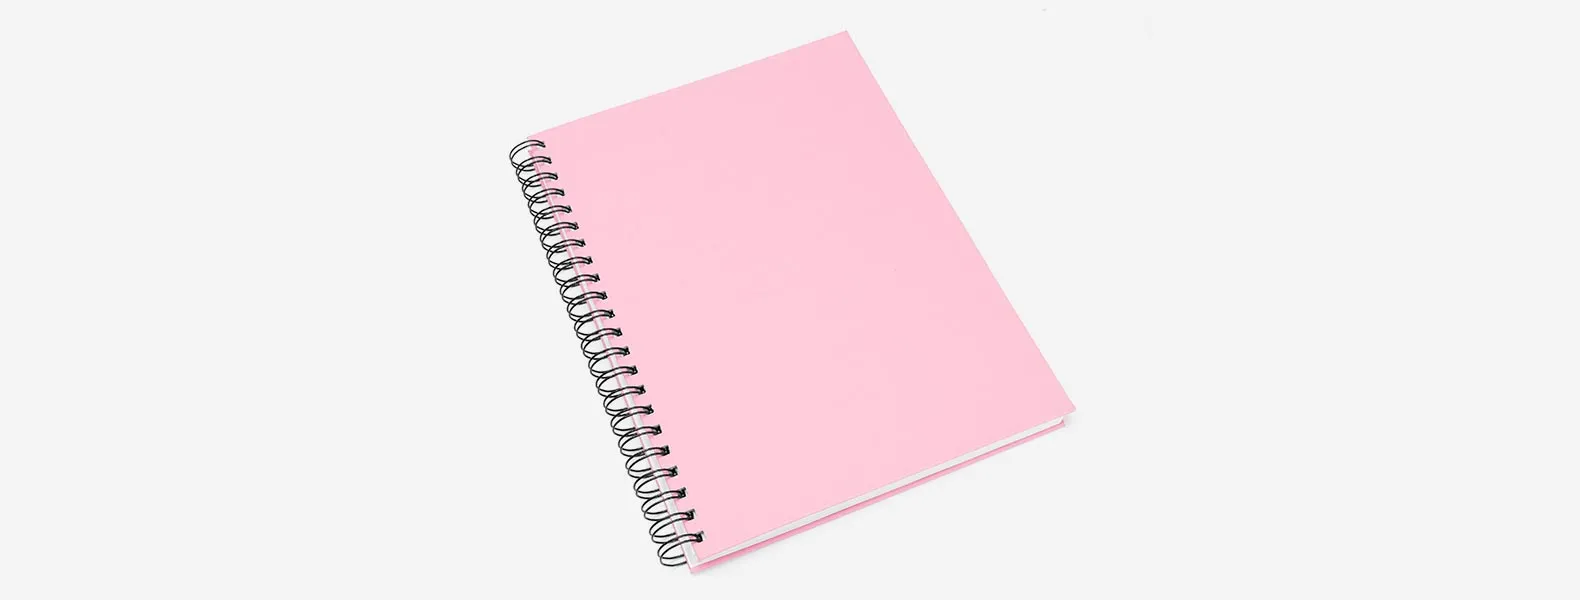 Caderno para anotações wire-o rosa com capa dura revestida em percalux linho. Conta com folha para dados pessoais, calendário e 100 folhas pautadas. Gramatura da folha de 70 g/m2.